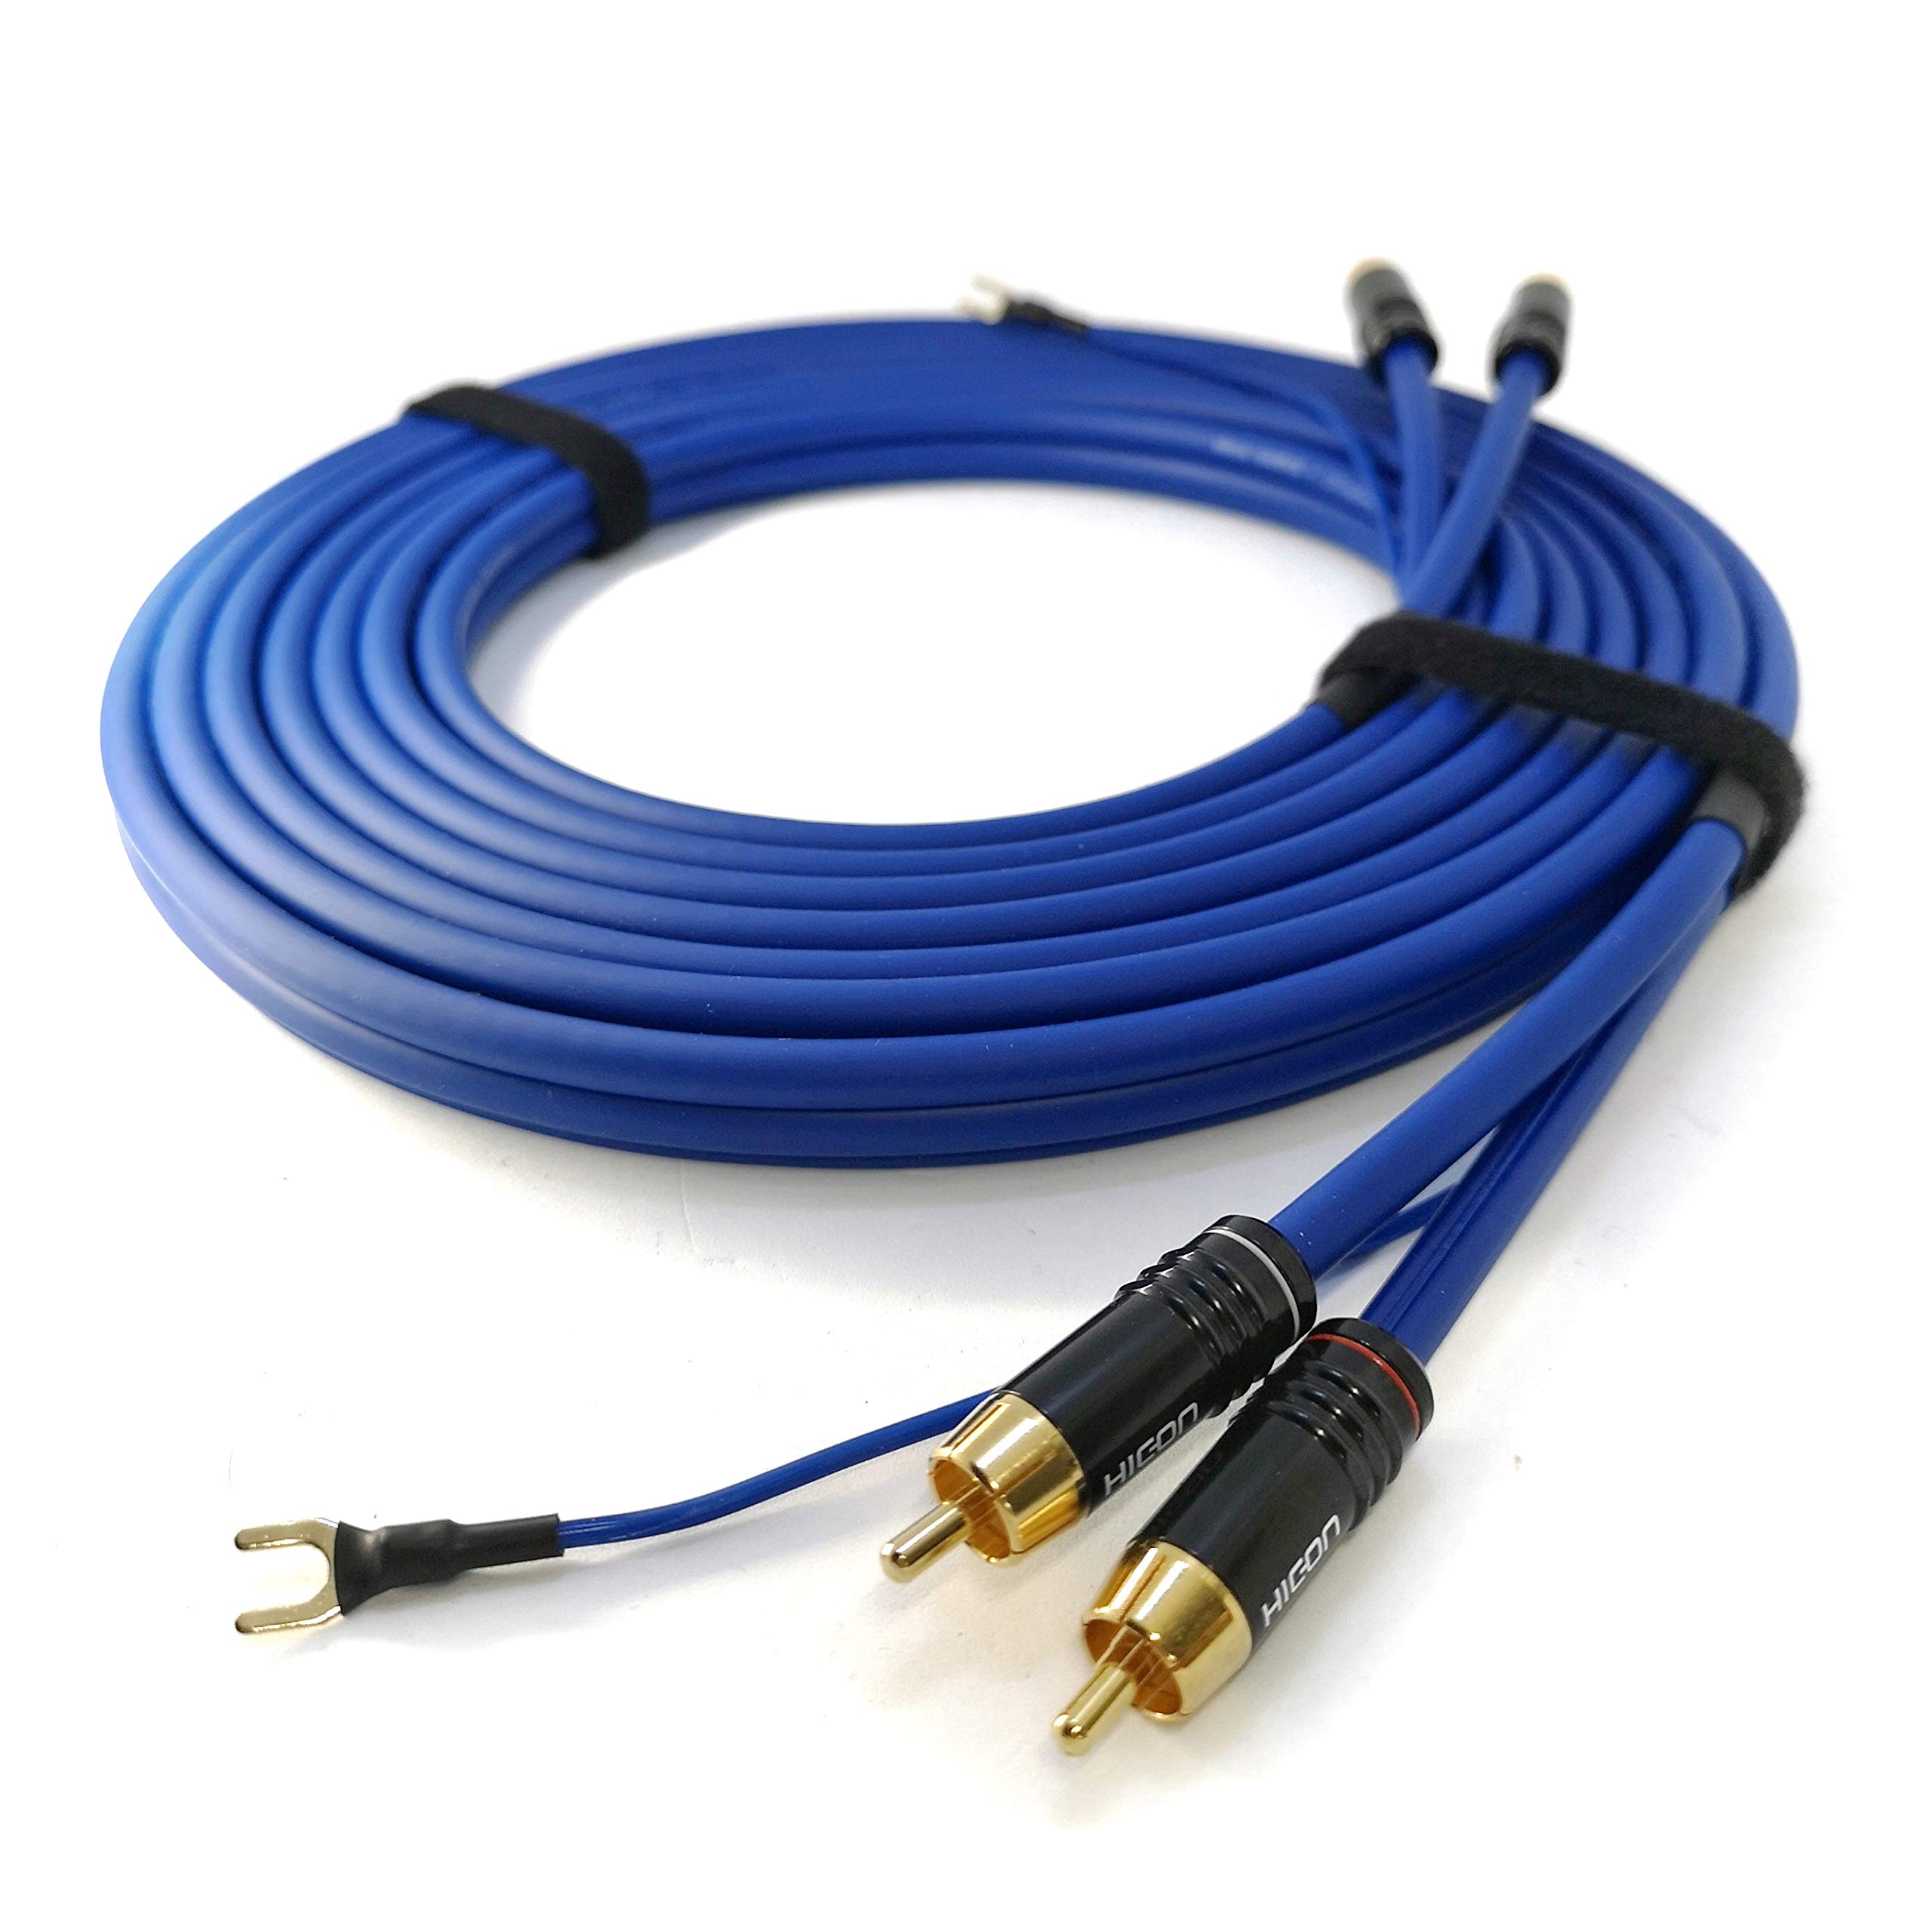 Phonokabel 8m+ extra Lange Masseleitung 1 x 0,35mm² Sommer Cable 2 x 0,35mm² geschirmtes Audiokabel vergoldete Kontakte - SC81-K3-0800